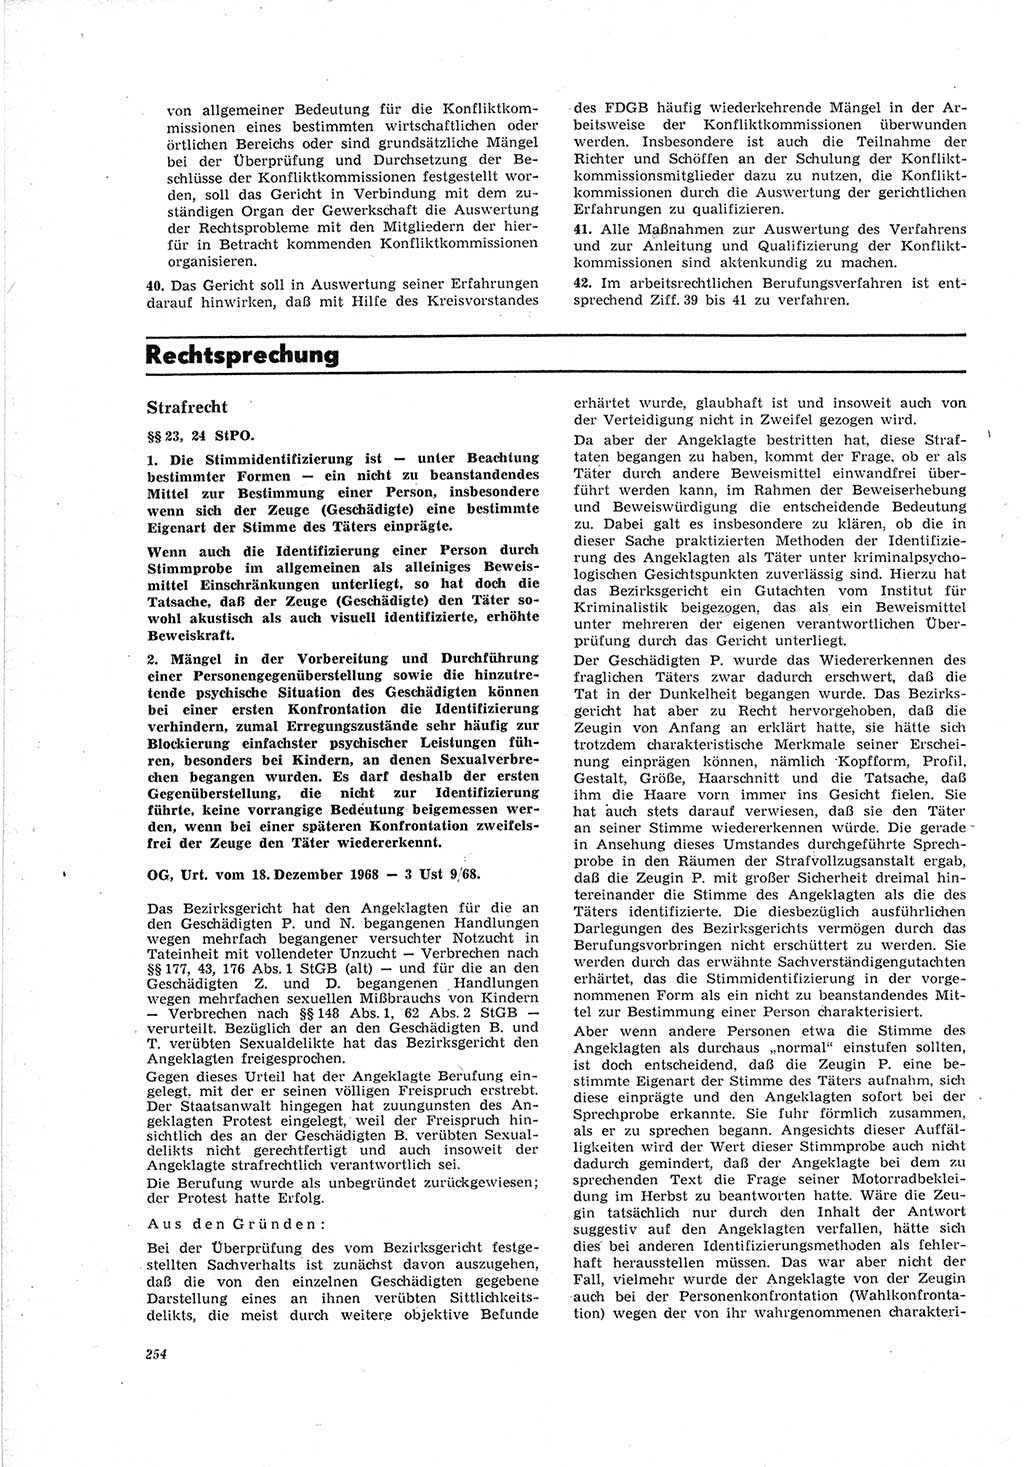 Neue Justiz (NJ), Zeitschrift für Recht und Rechtswissenschaft [Deutsche Demokratische Republik (DDR)], 23. Jahrgang 1969, Seite 254 (NJ DDR 1969, S. 254)